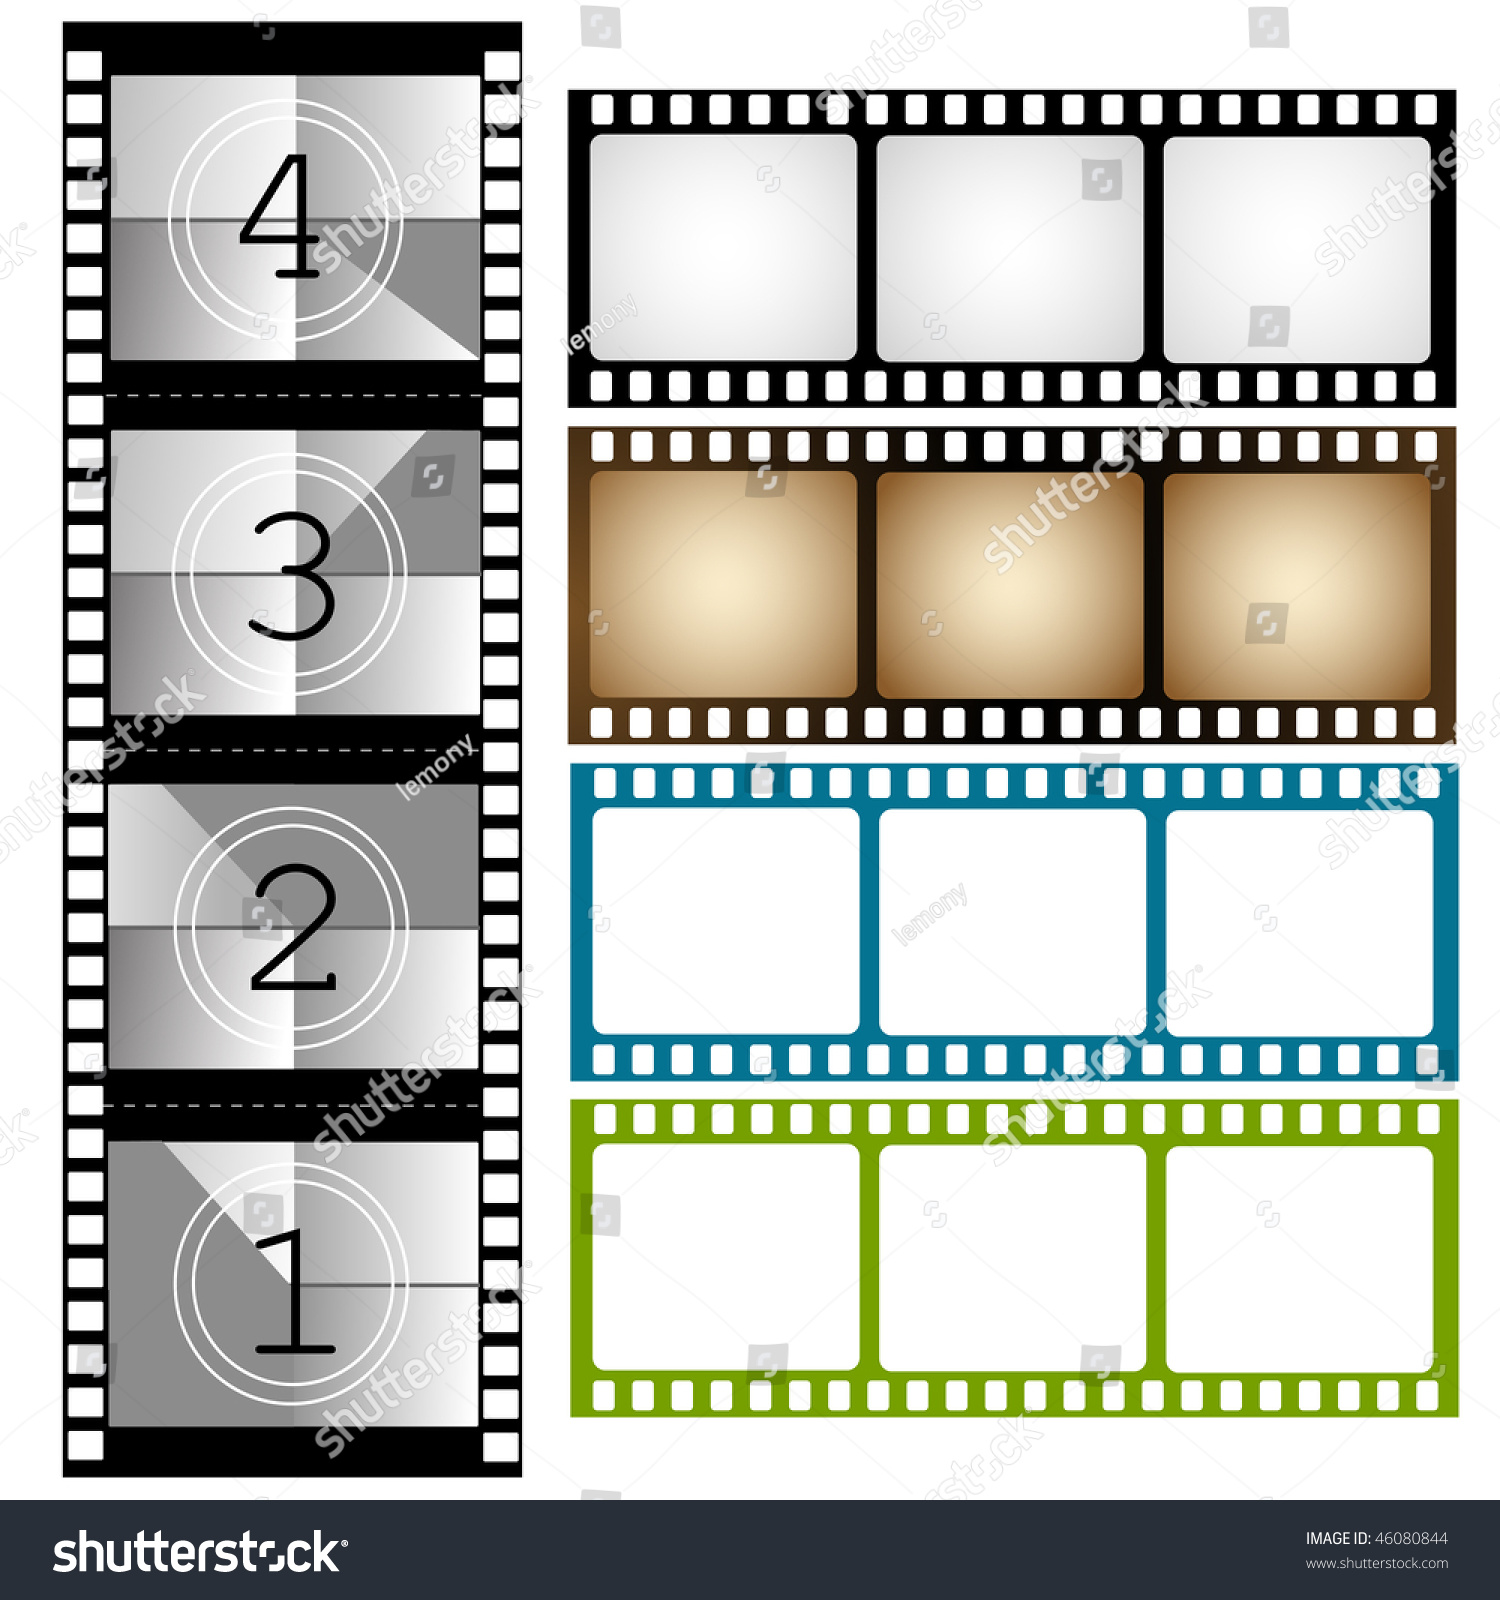 Film, Frame Stock Vector Illustration 46080844 : Shutterstock